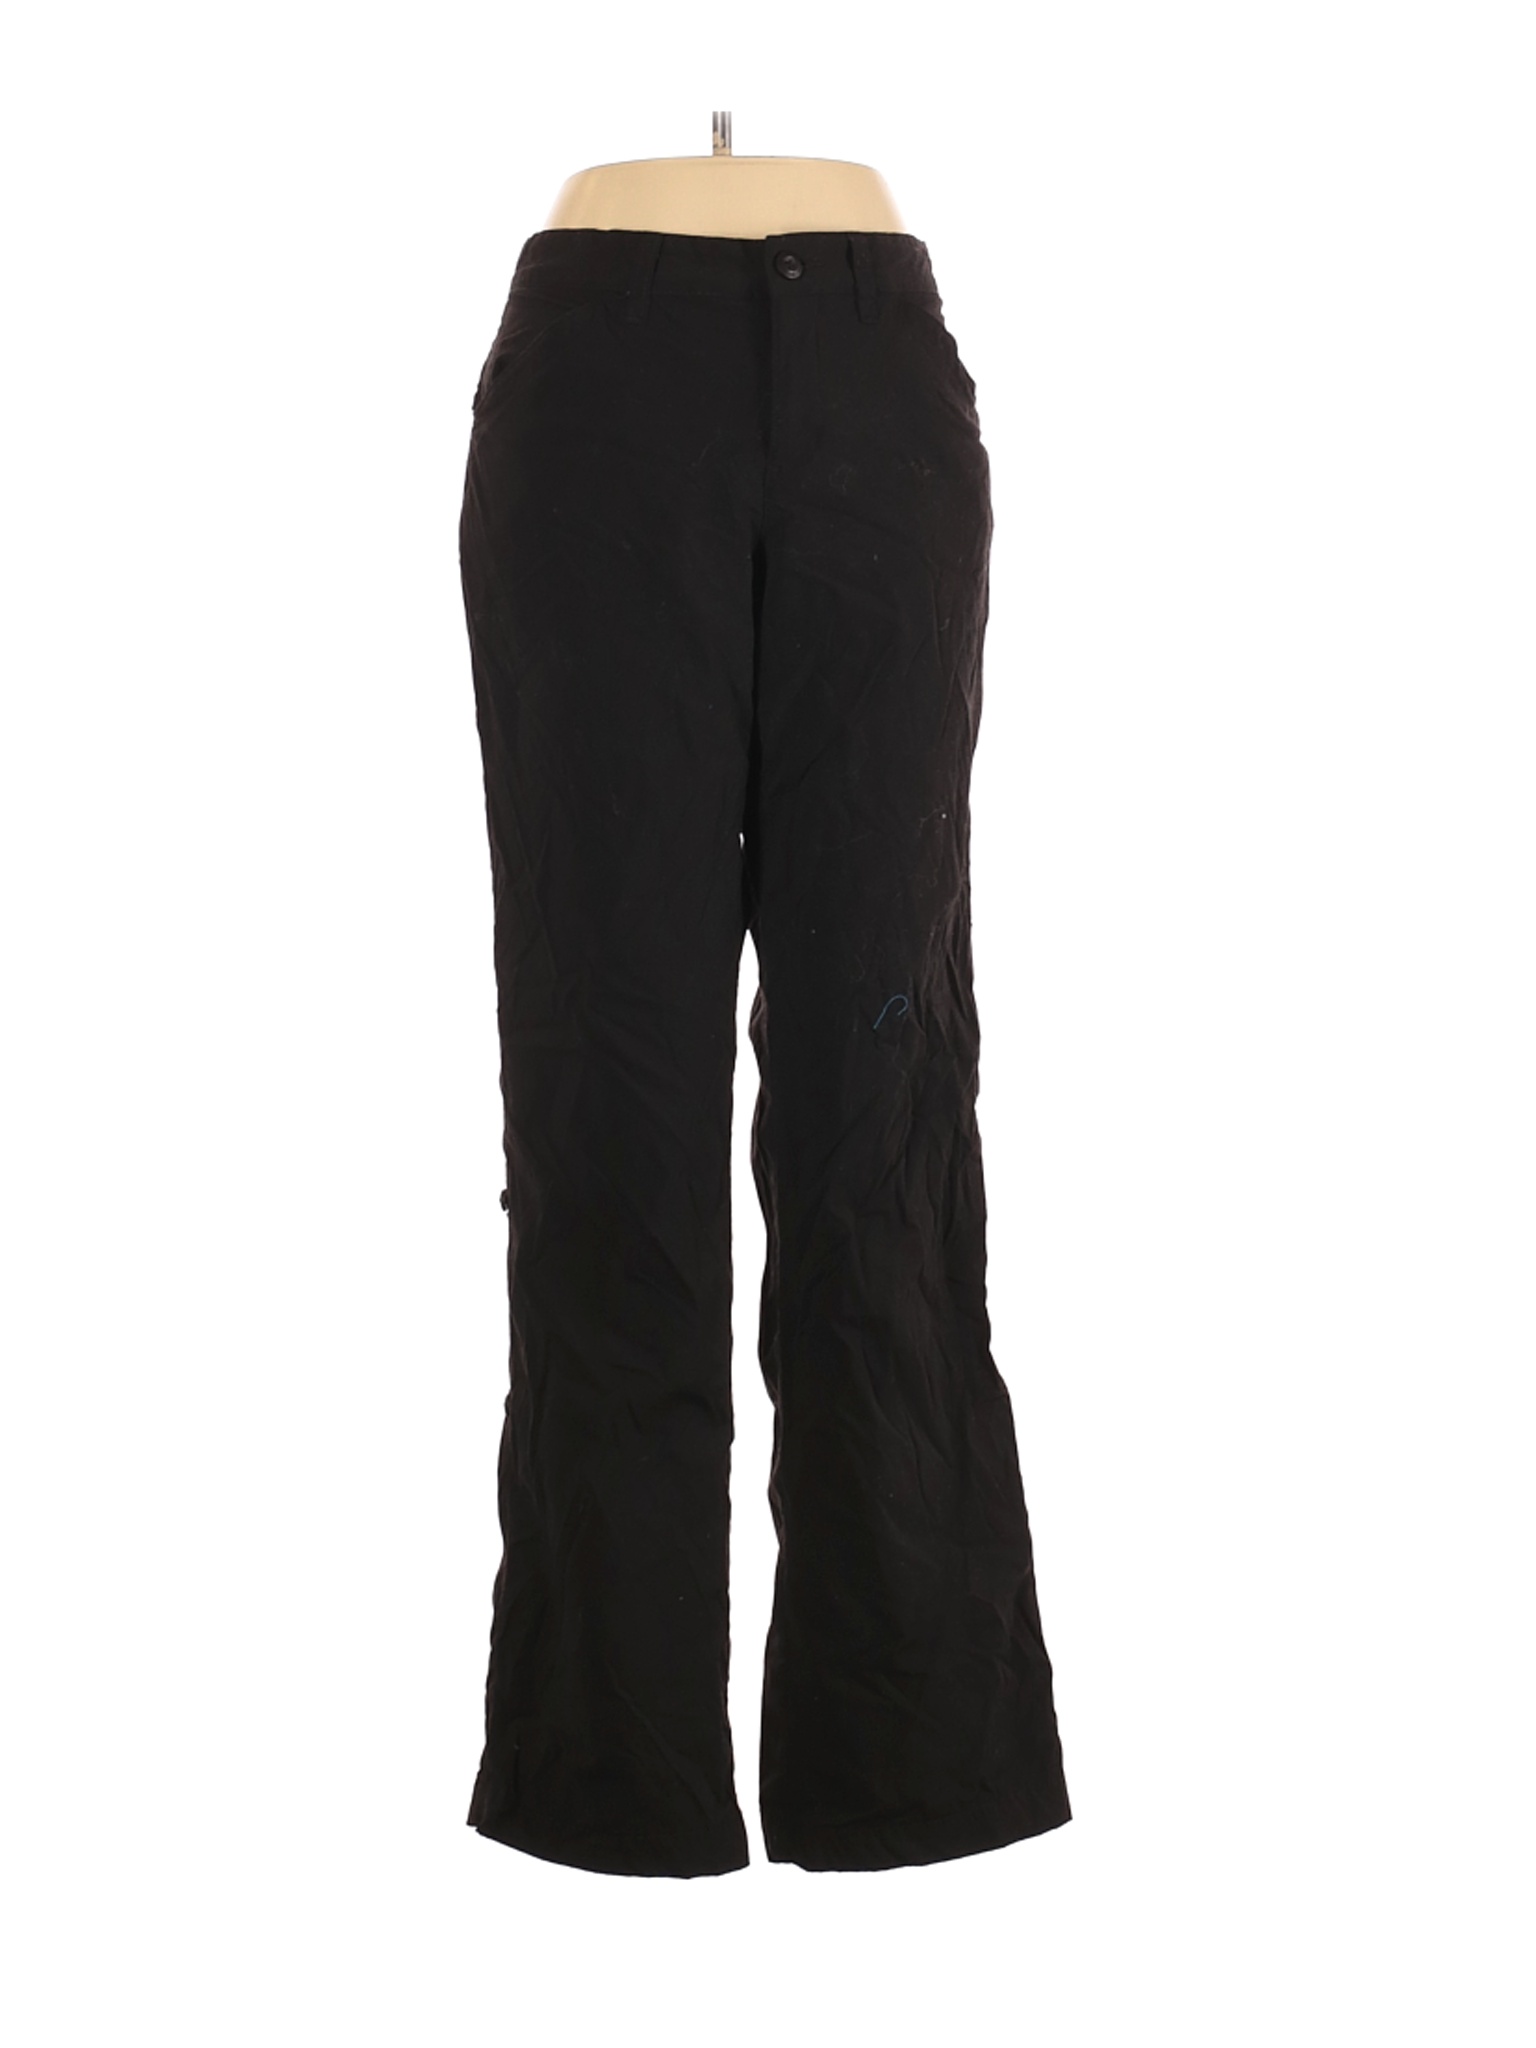 Eddie Bauer Women Black Active Pants 8 | eBay